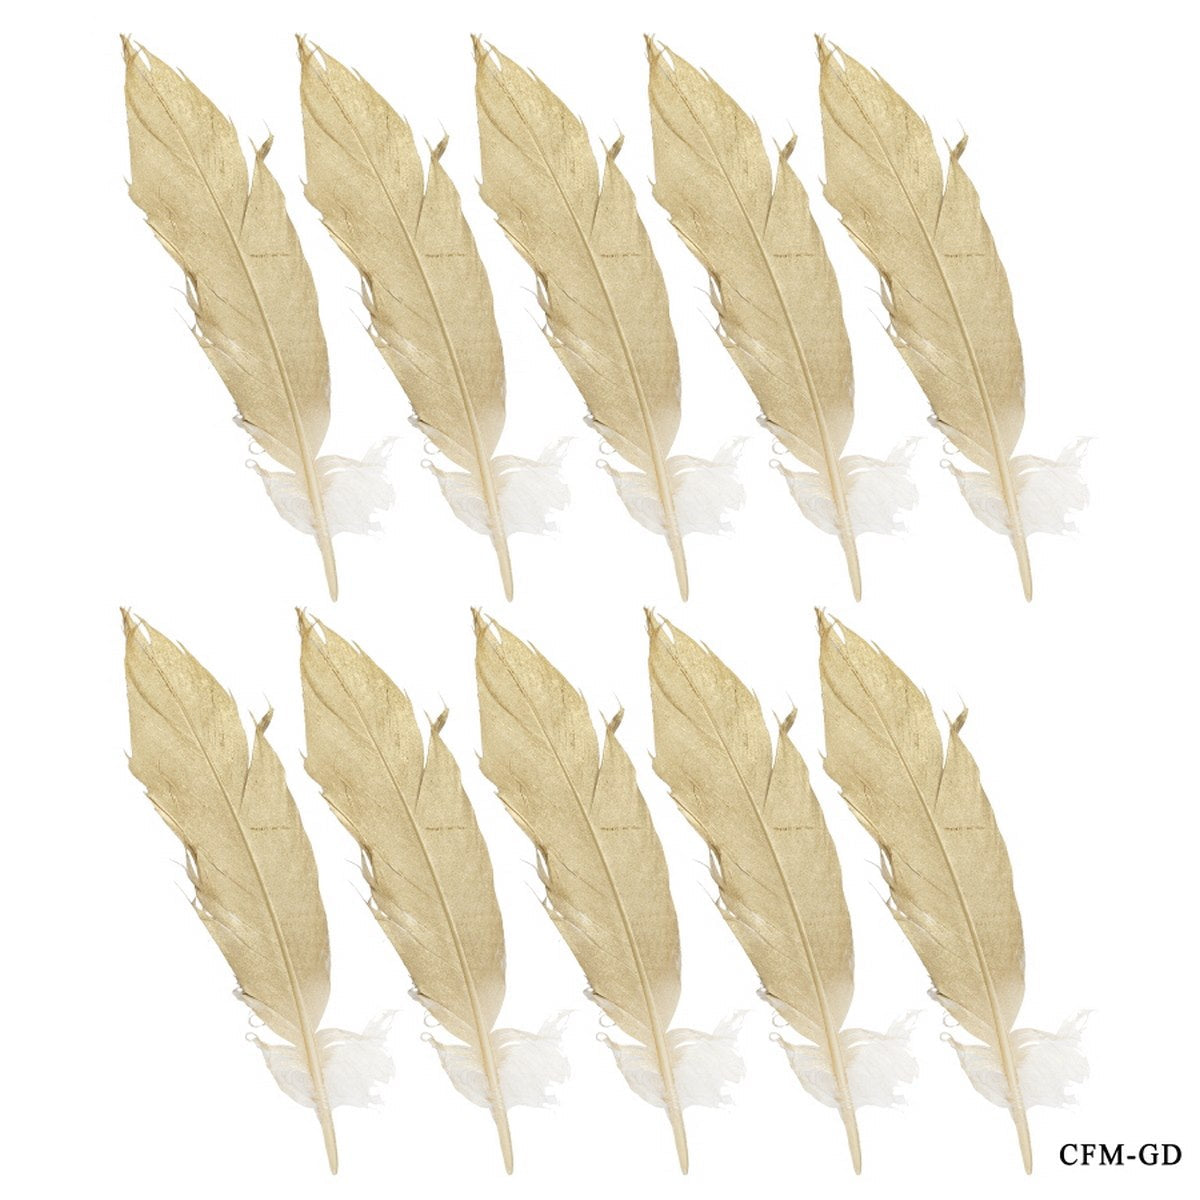 jags-mumbai Feather Feather Artificial Medium Golden 10pcs